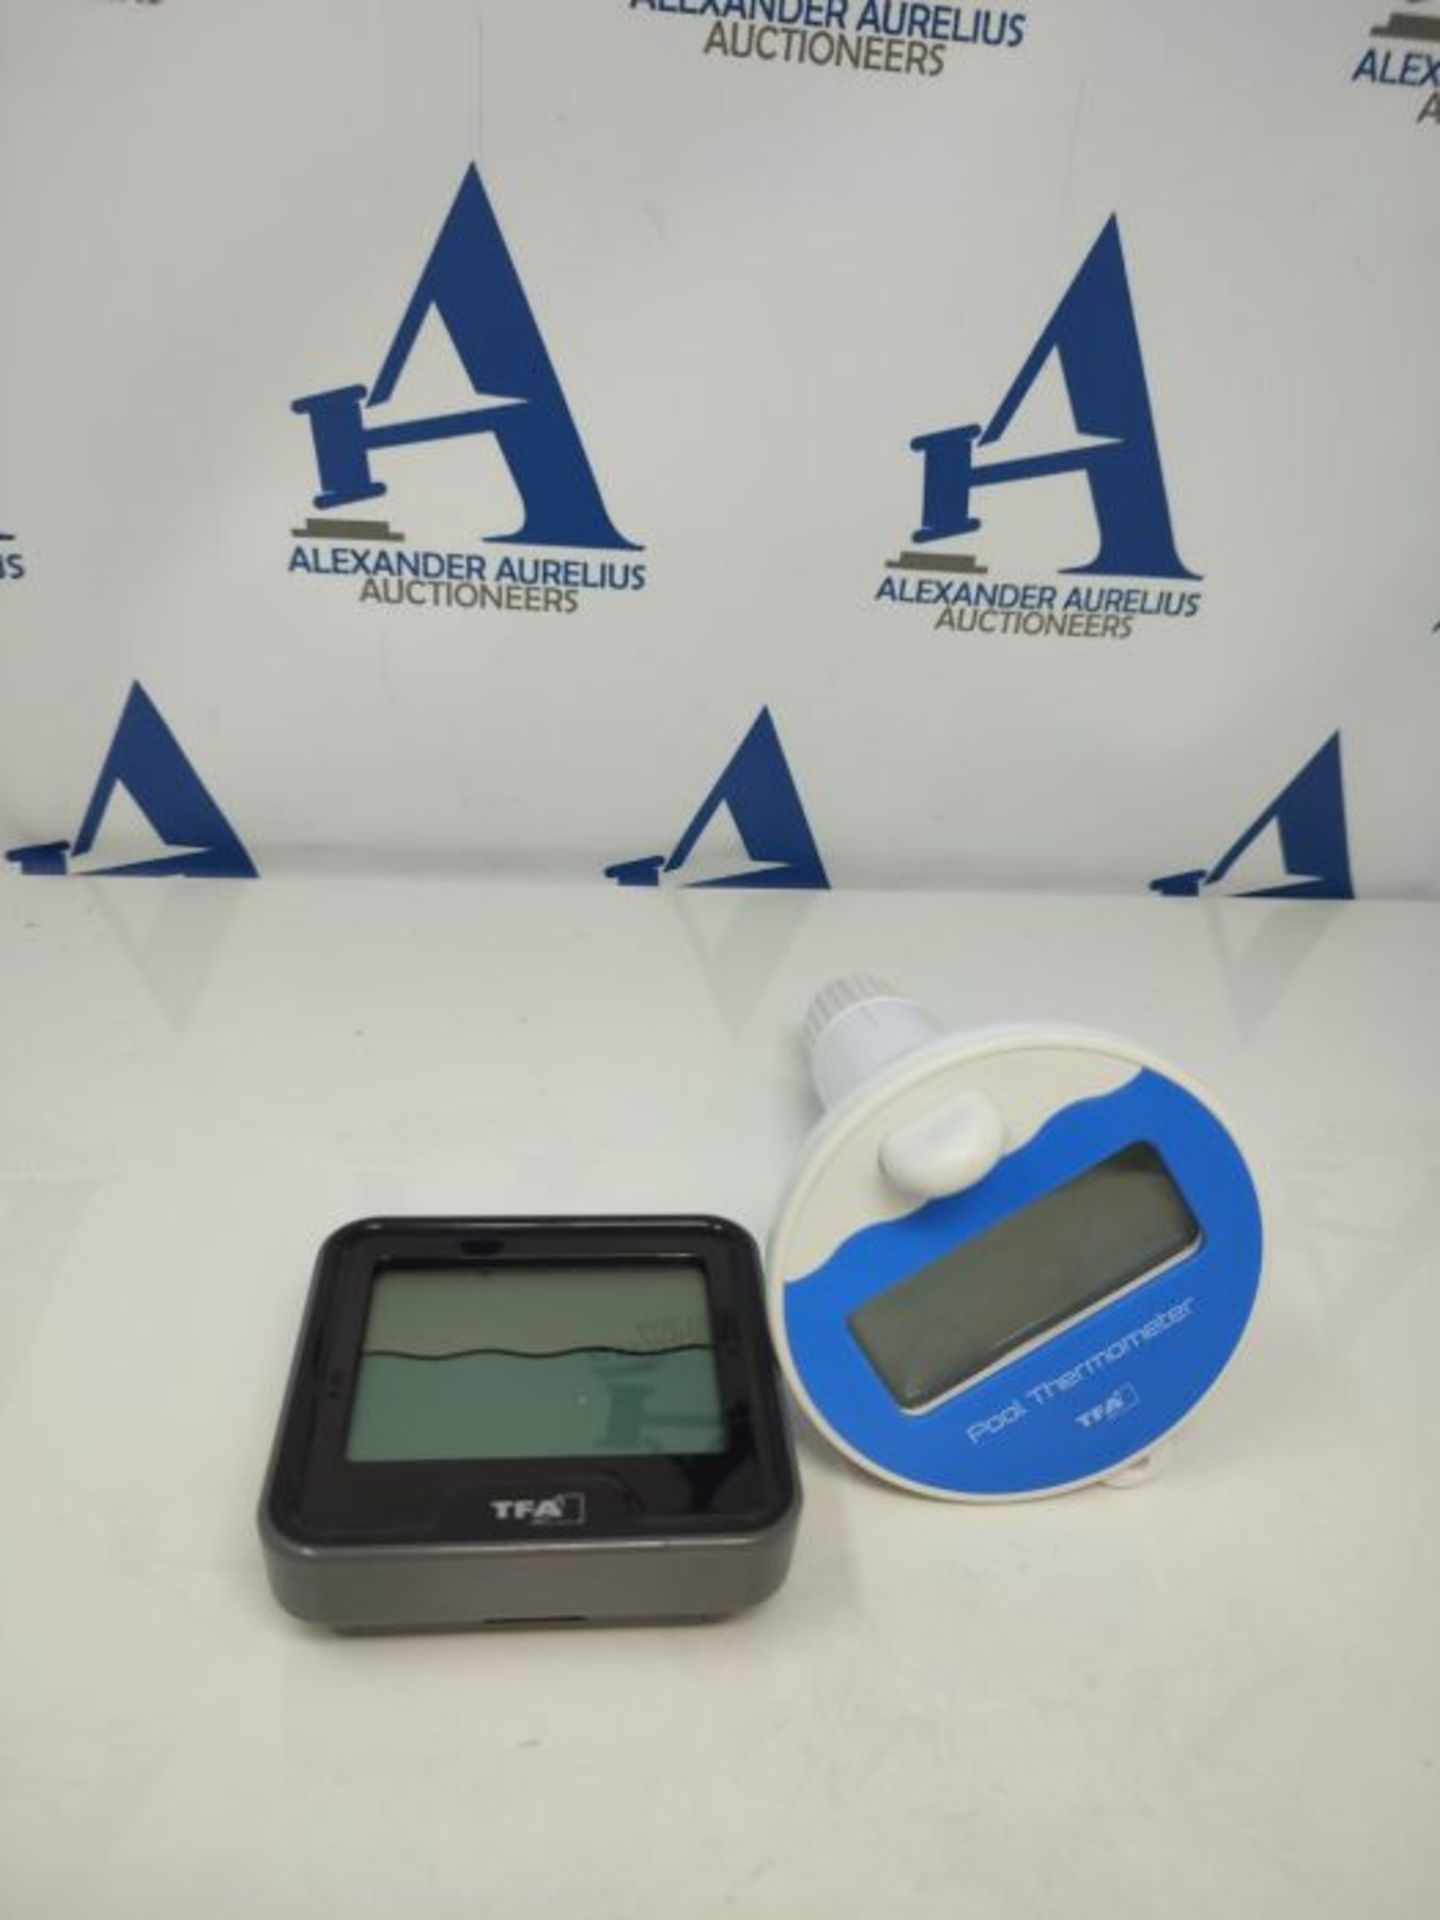 TFA Dostmann Marbella Wireless Pool Thermometer, Black, L110 x W110 x H210 mm - Image 2 of 3